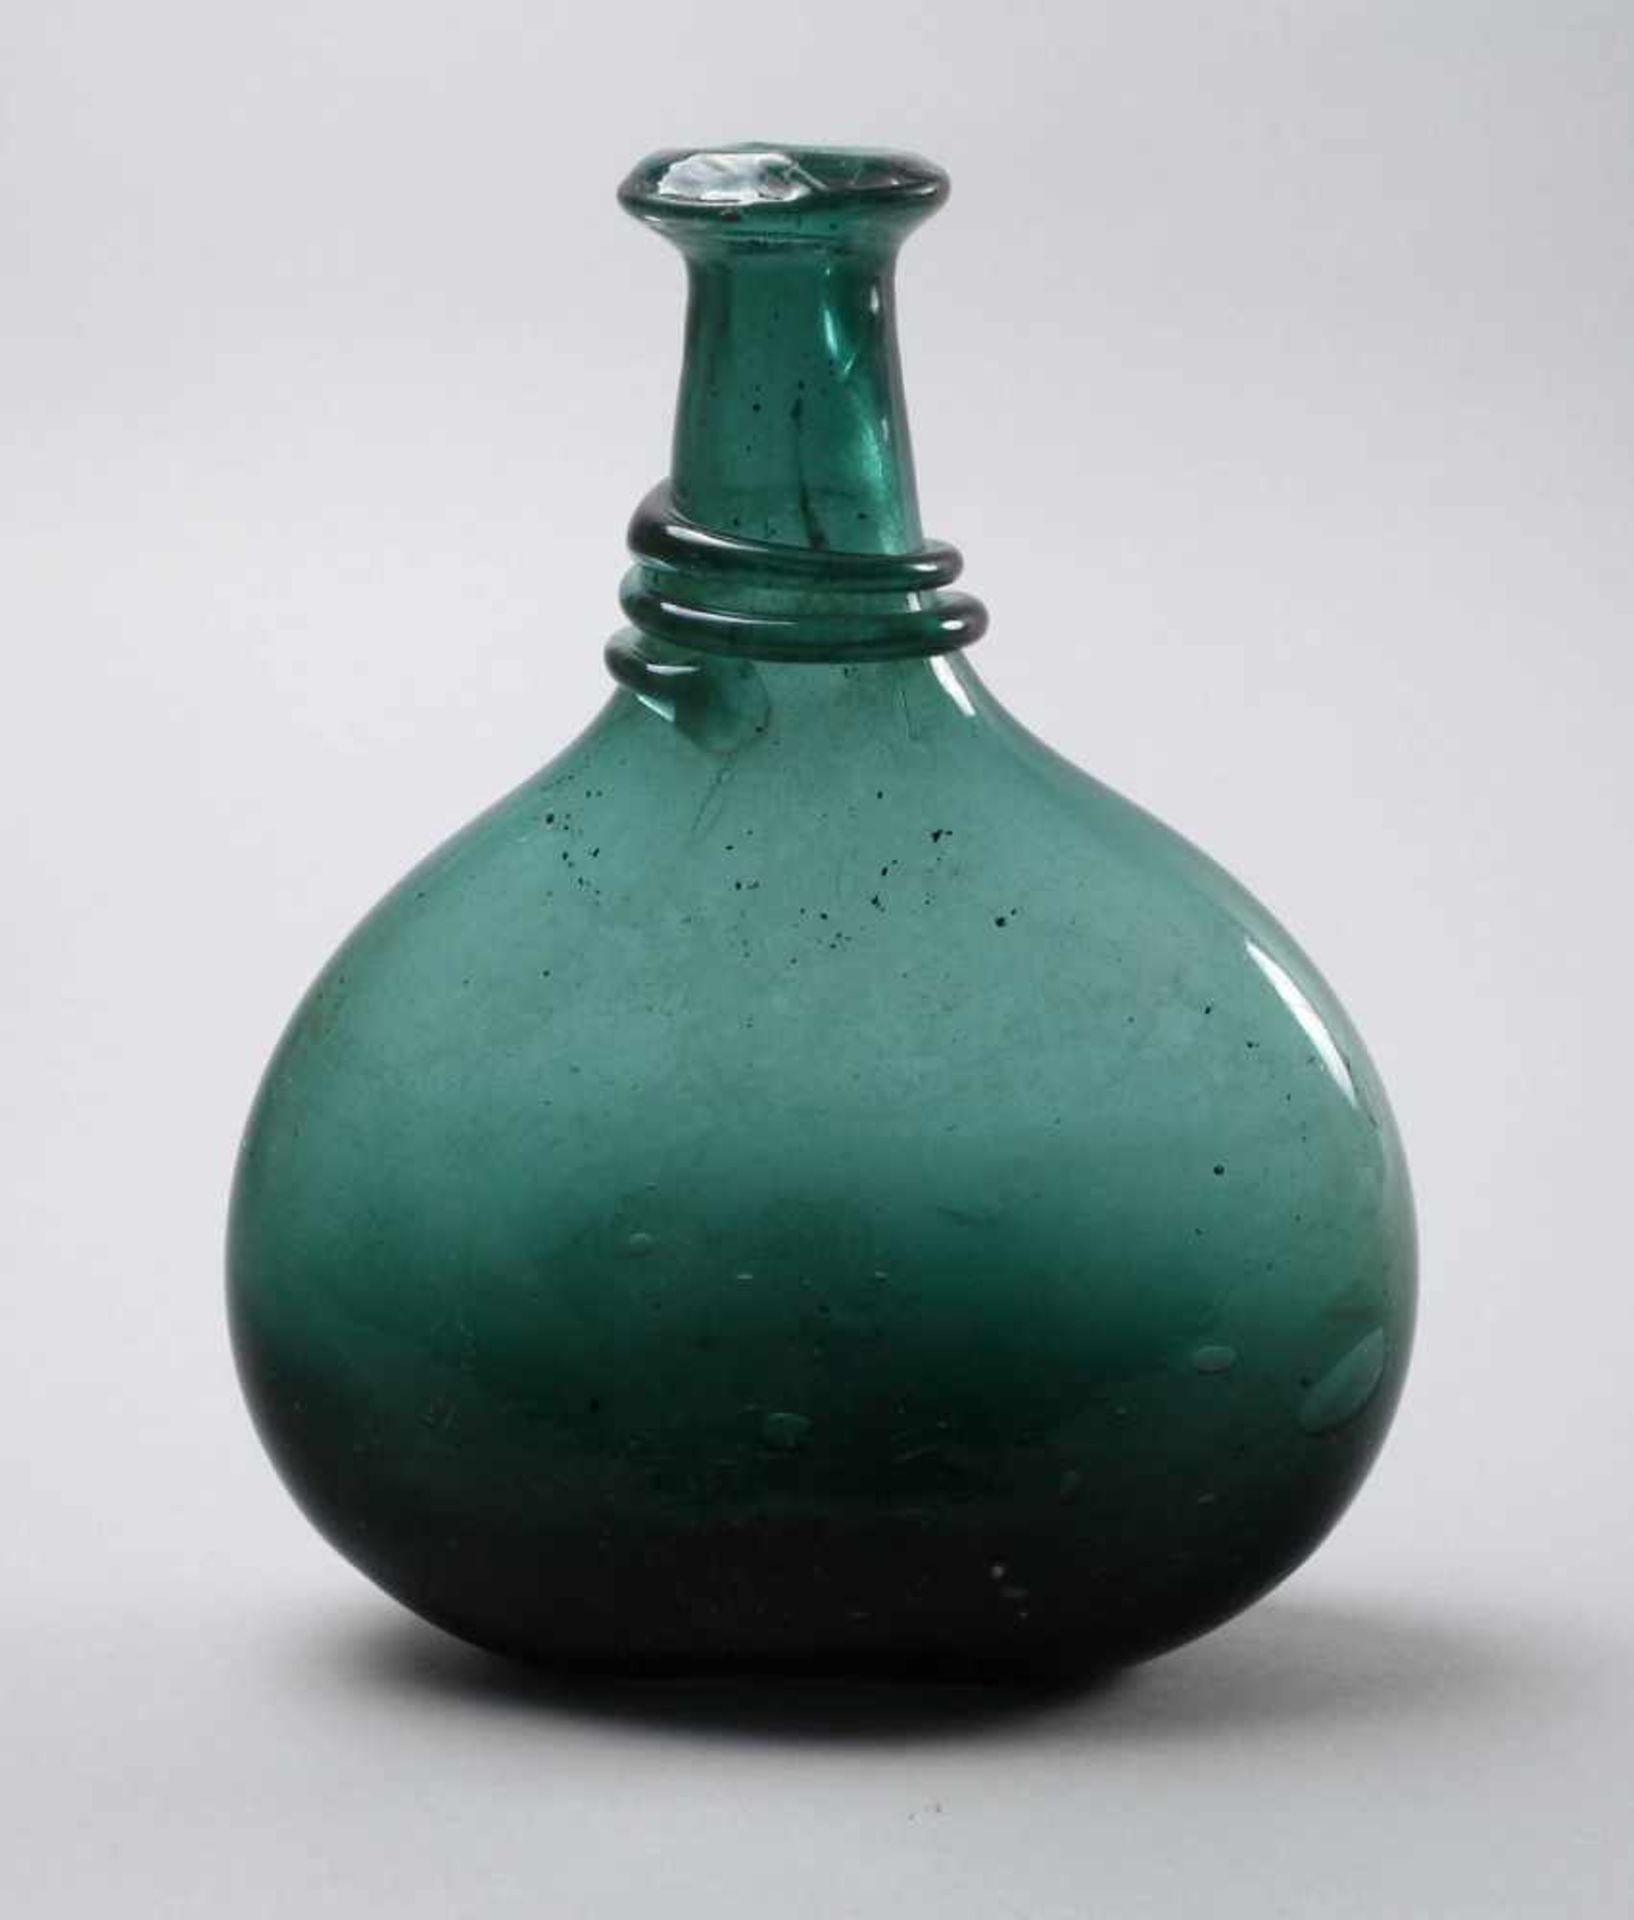 Barocke Bocksbeutelflasche18. Jh., stark blasiges, grünes Glas, tief eingestochener Boden mit